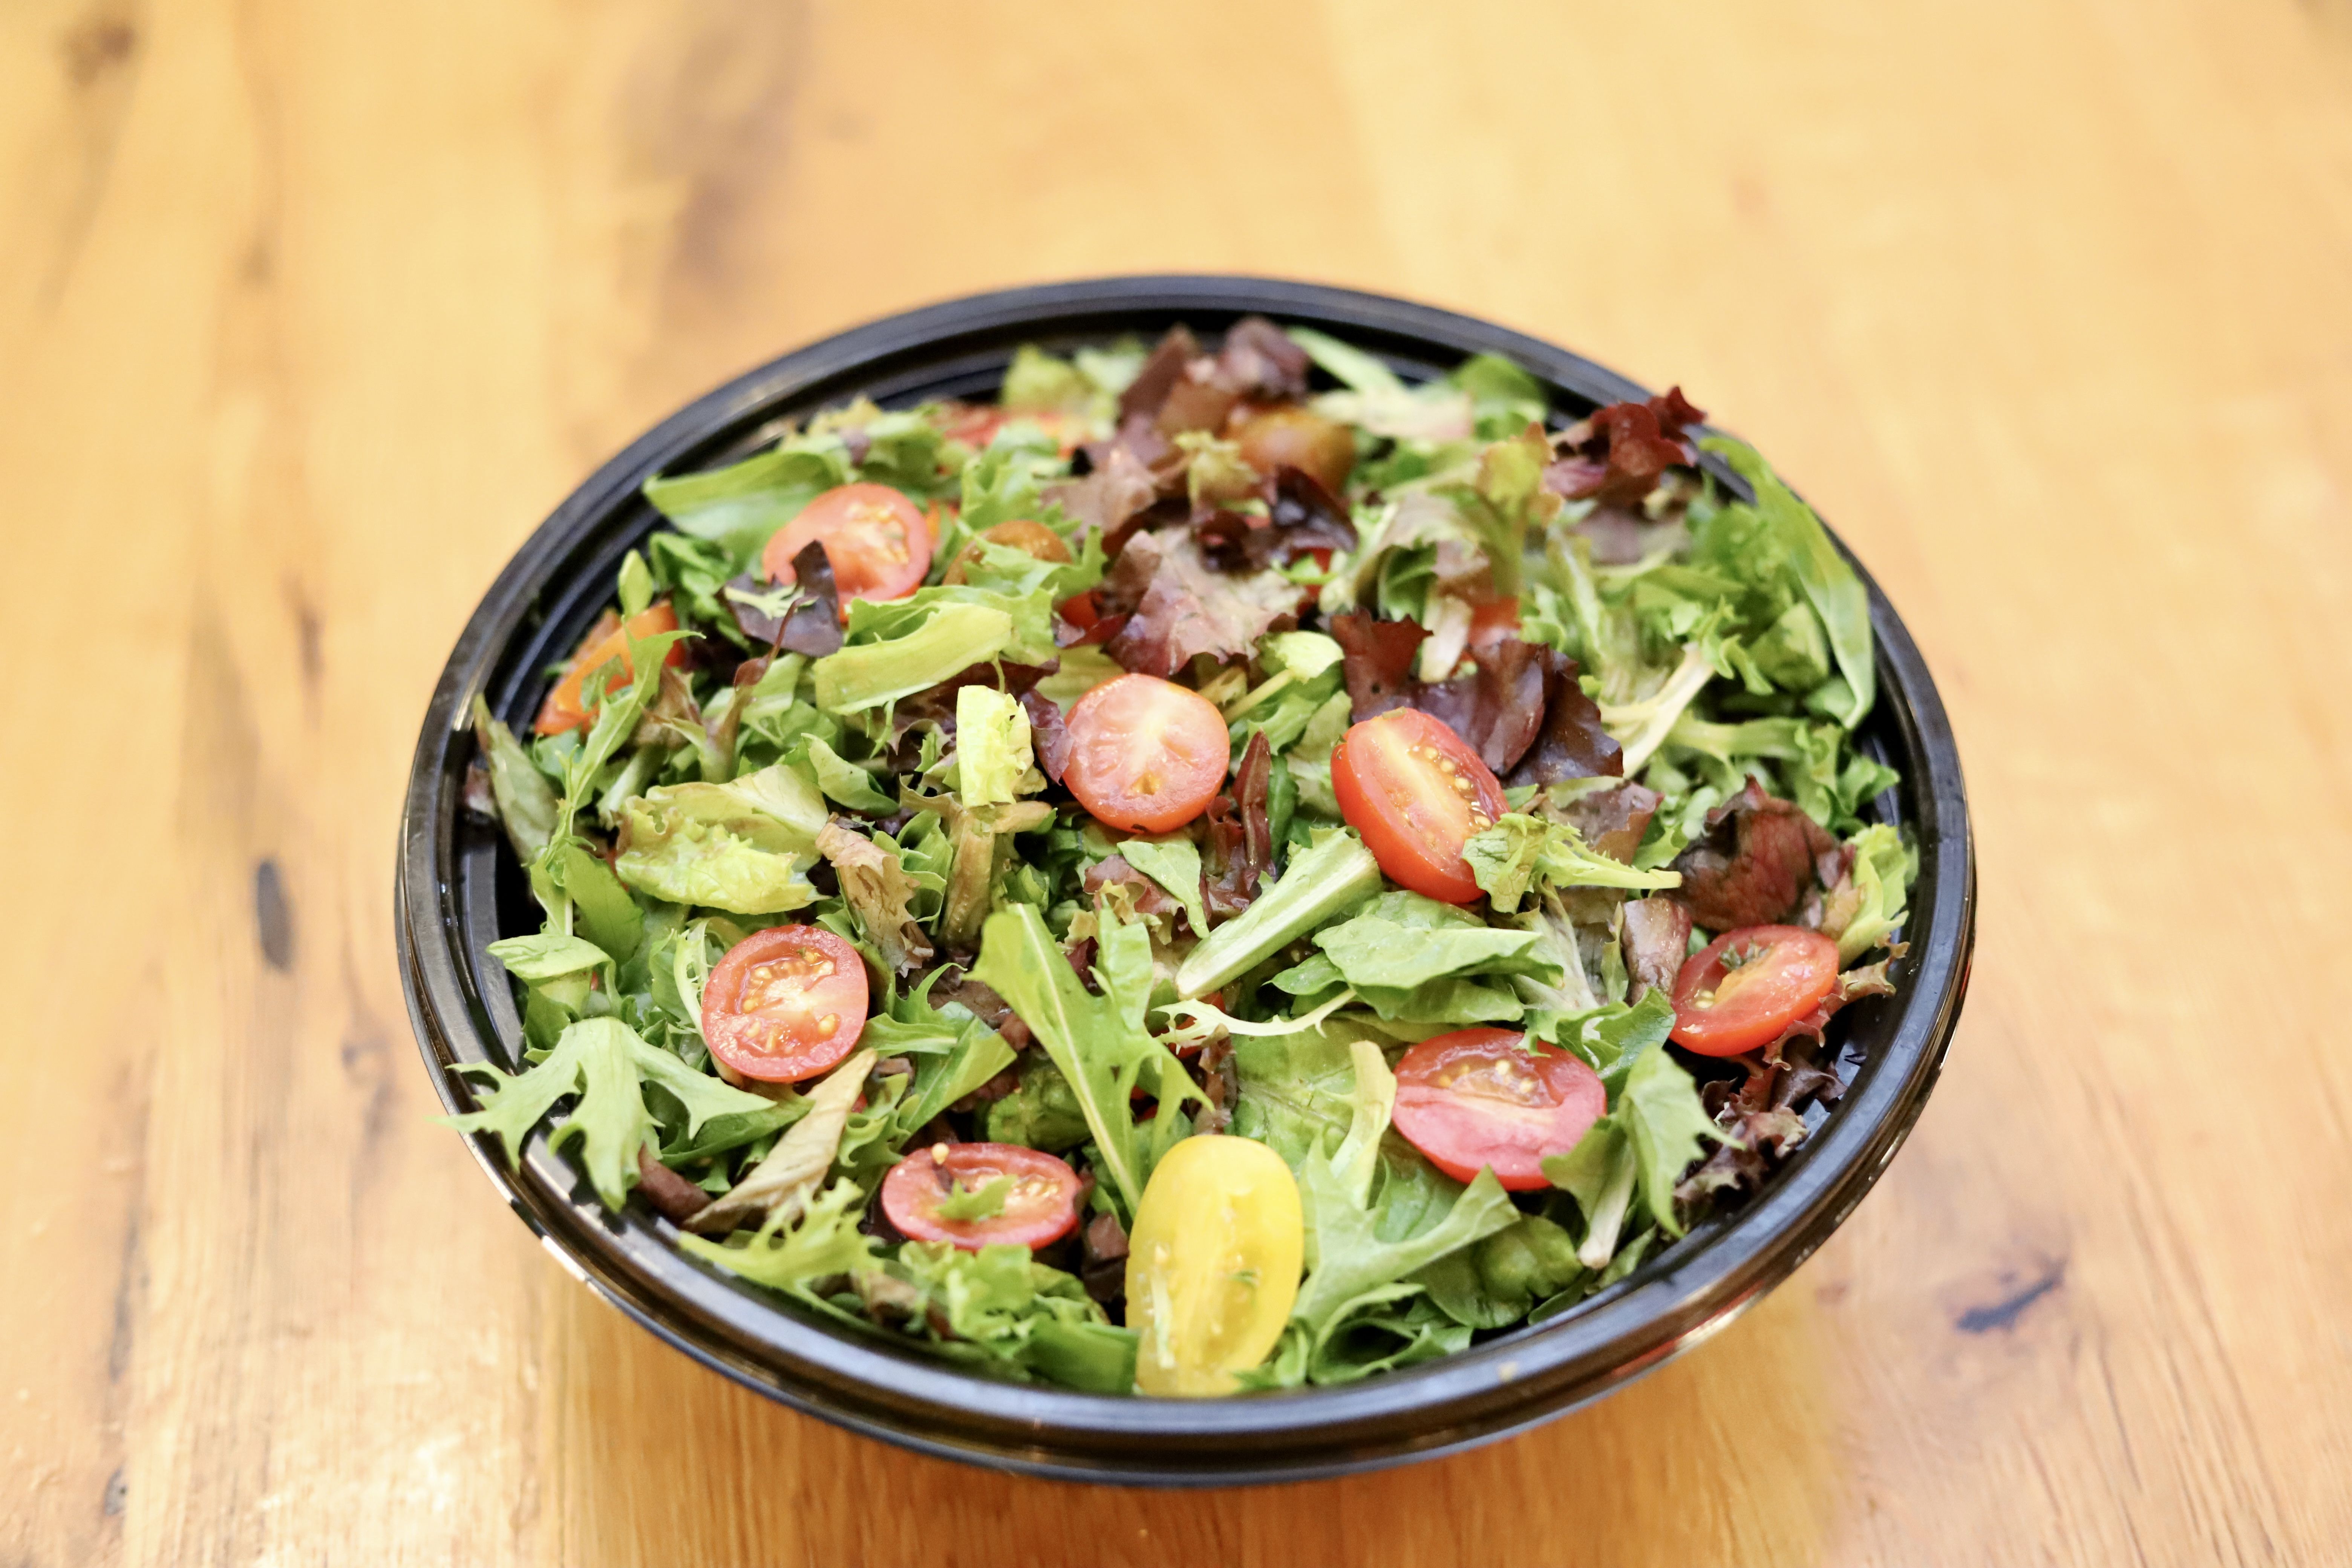 Seasonal Mixed Green Salad - Large